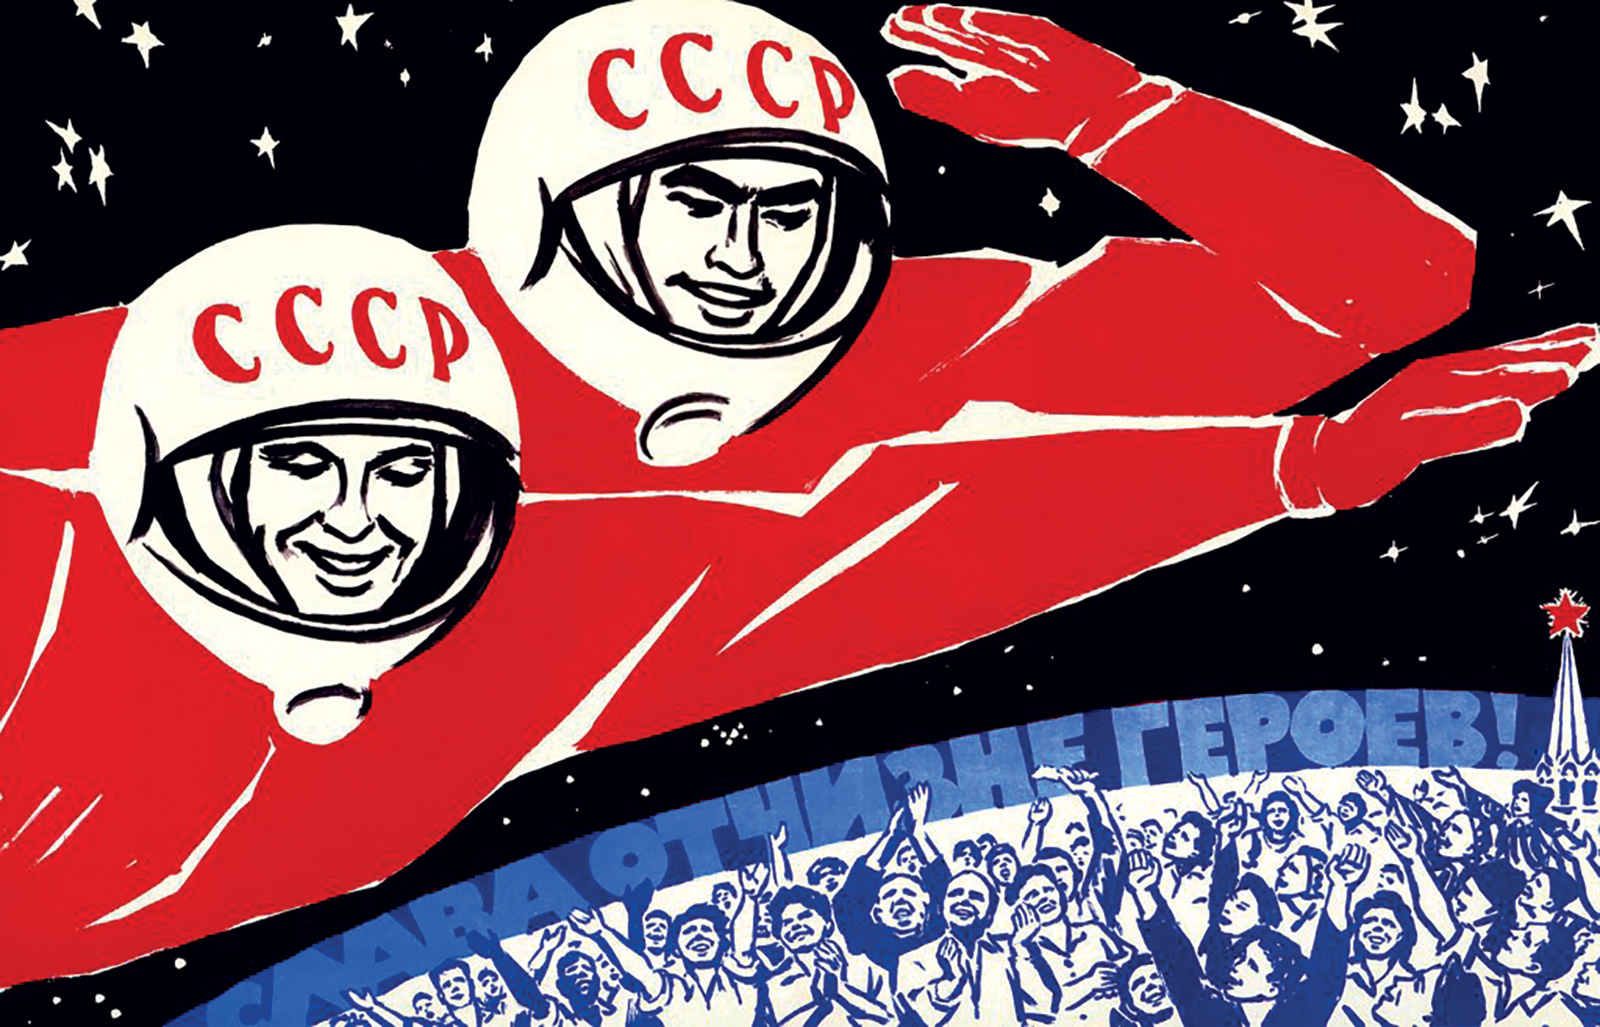 *Soviéticos estén orgullosos, abrieron el camino a las estrellas*, póster de propaganda soviética. World History Archive